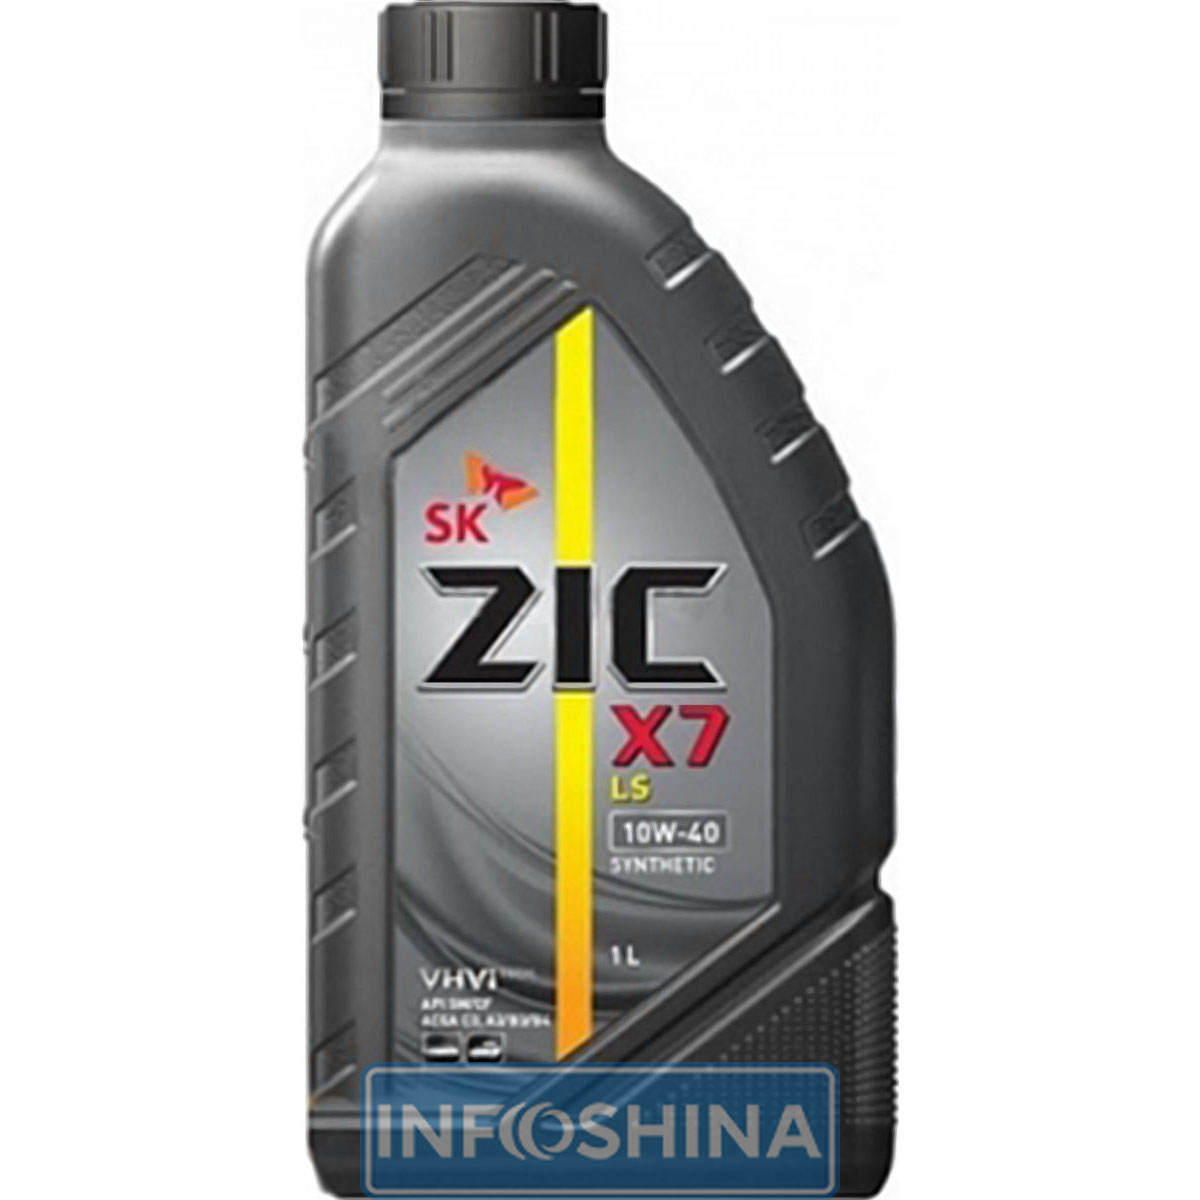 Zic X7 LS 10W-40